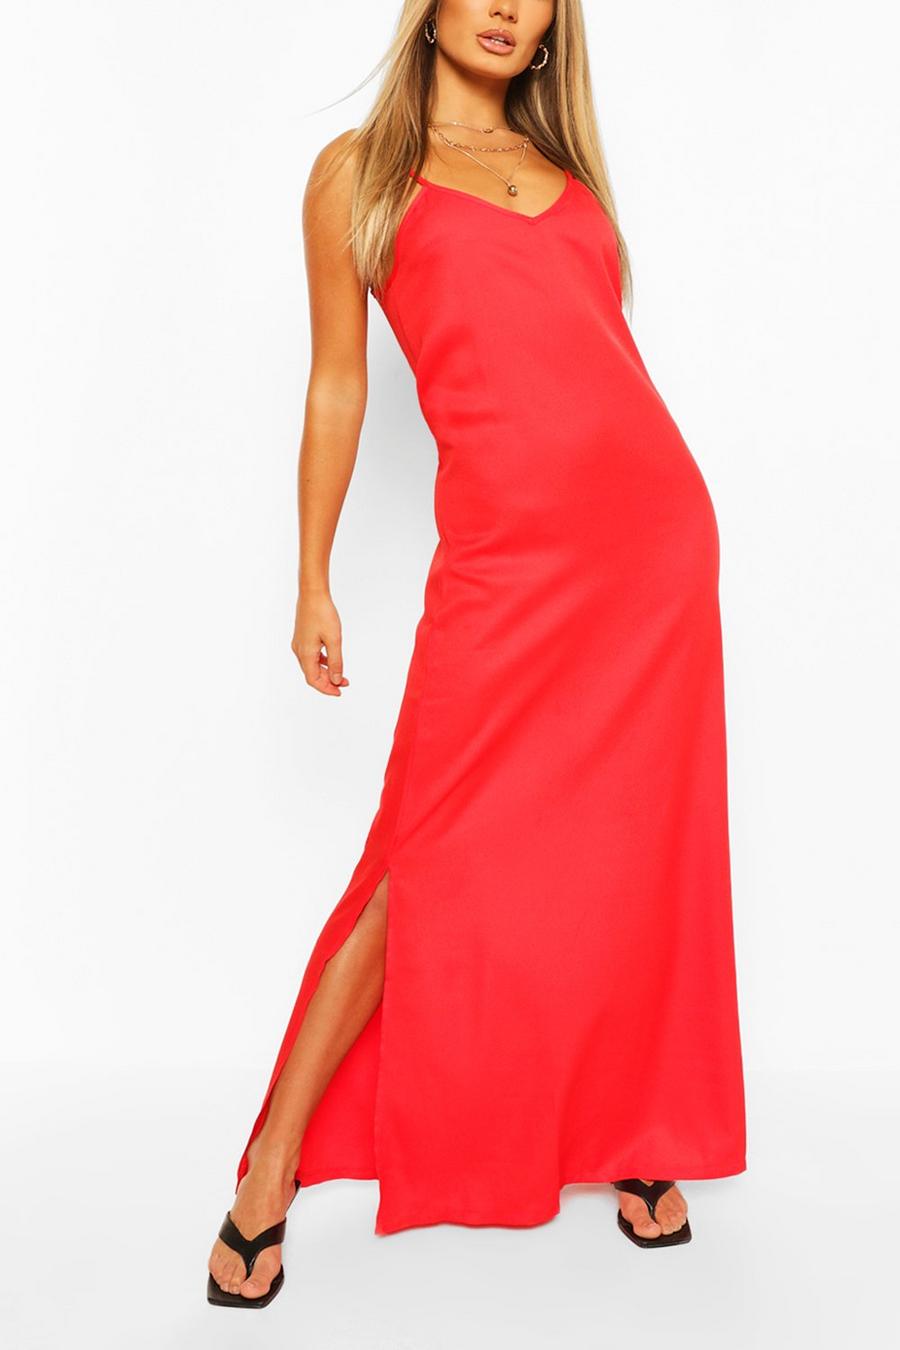 אדום rojo שמלת מקסי עם כתפיות דקות ומחשוף גב image number 1